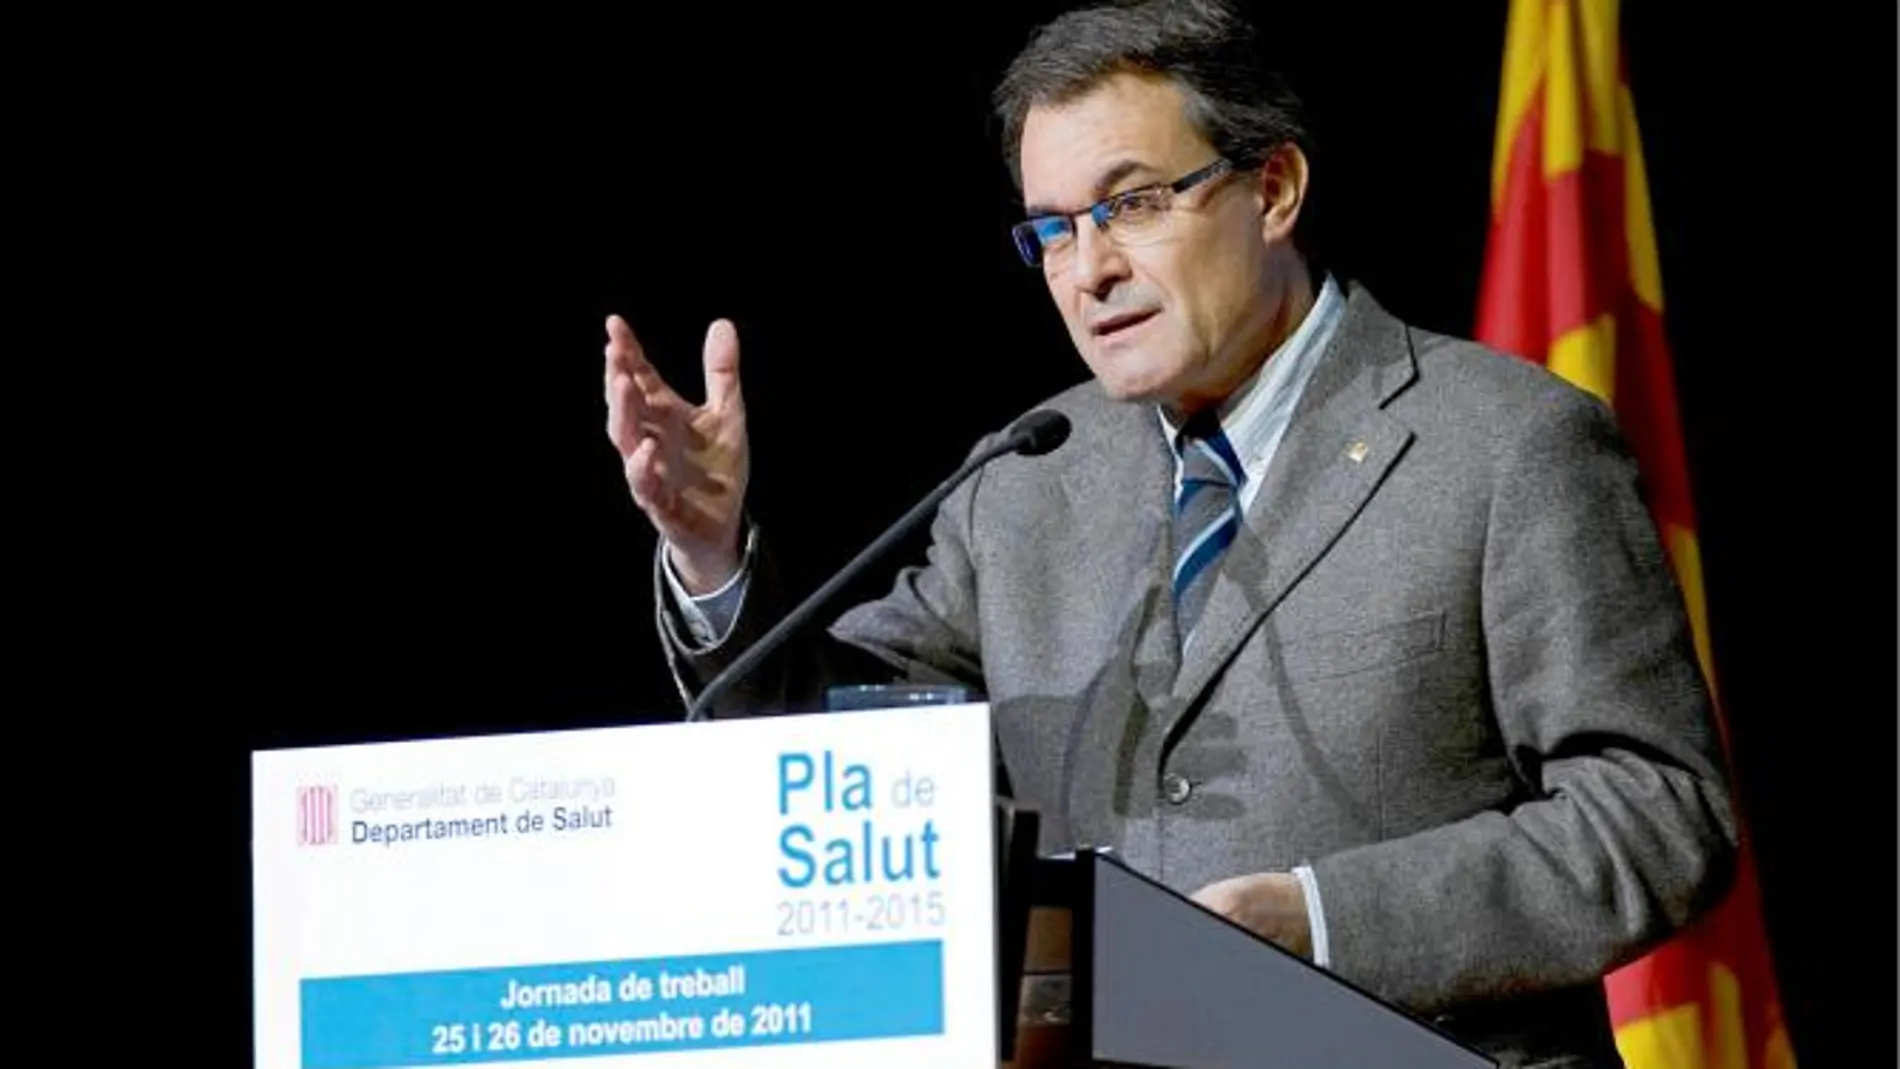 El president de la Generalitat, Artur Mas, clausuró ayer en Sitges unas jornadas sobre salud